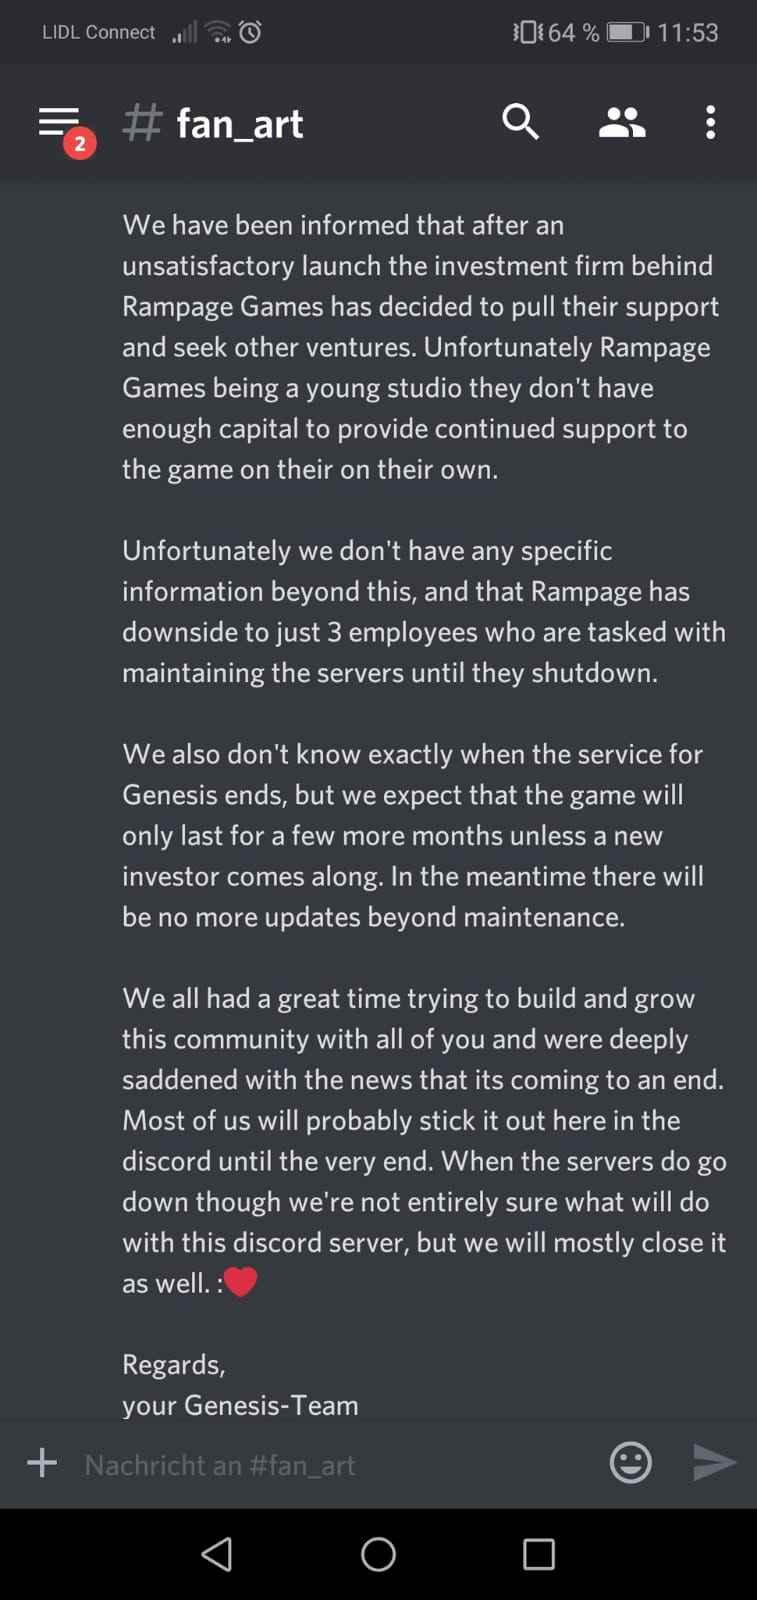 Rampage Games shutting down Genesis game